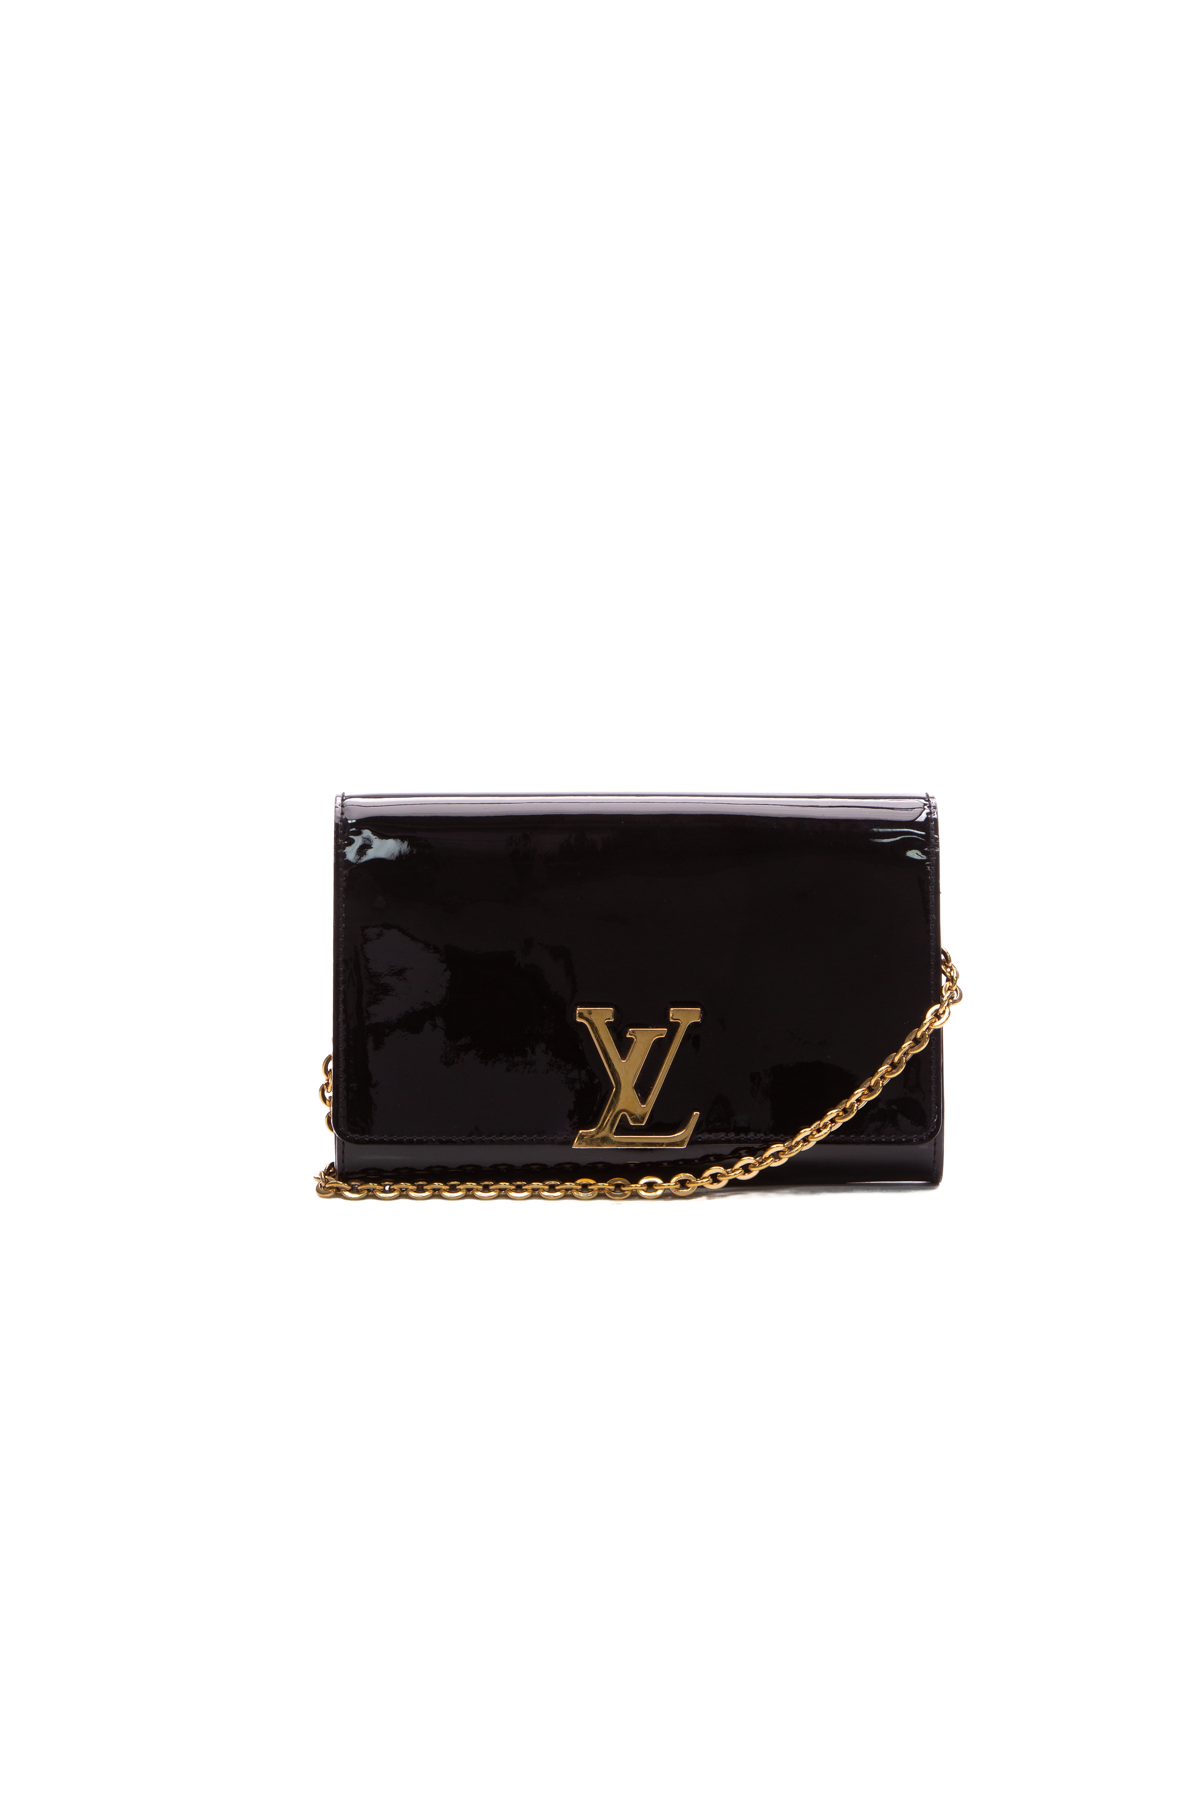 Louis Vuitton Louise Bag - Couture USA